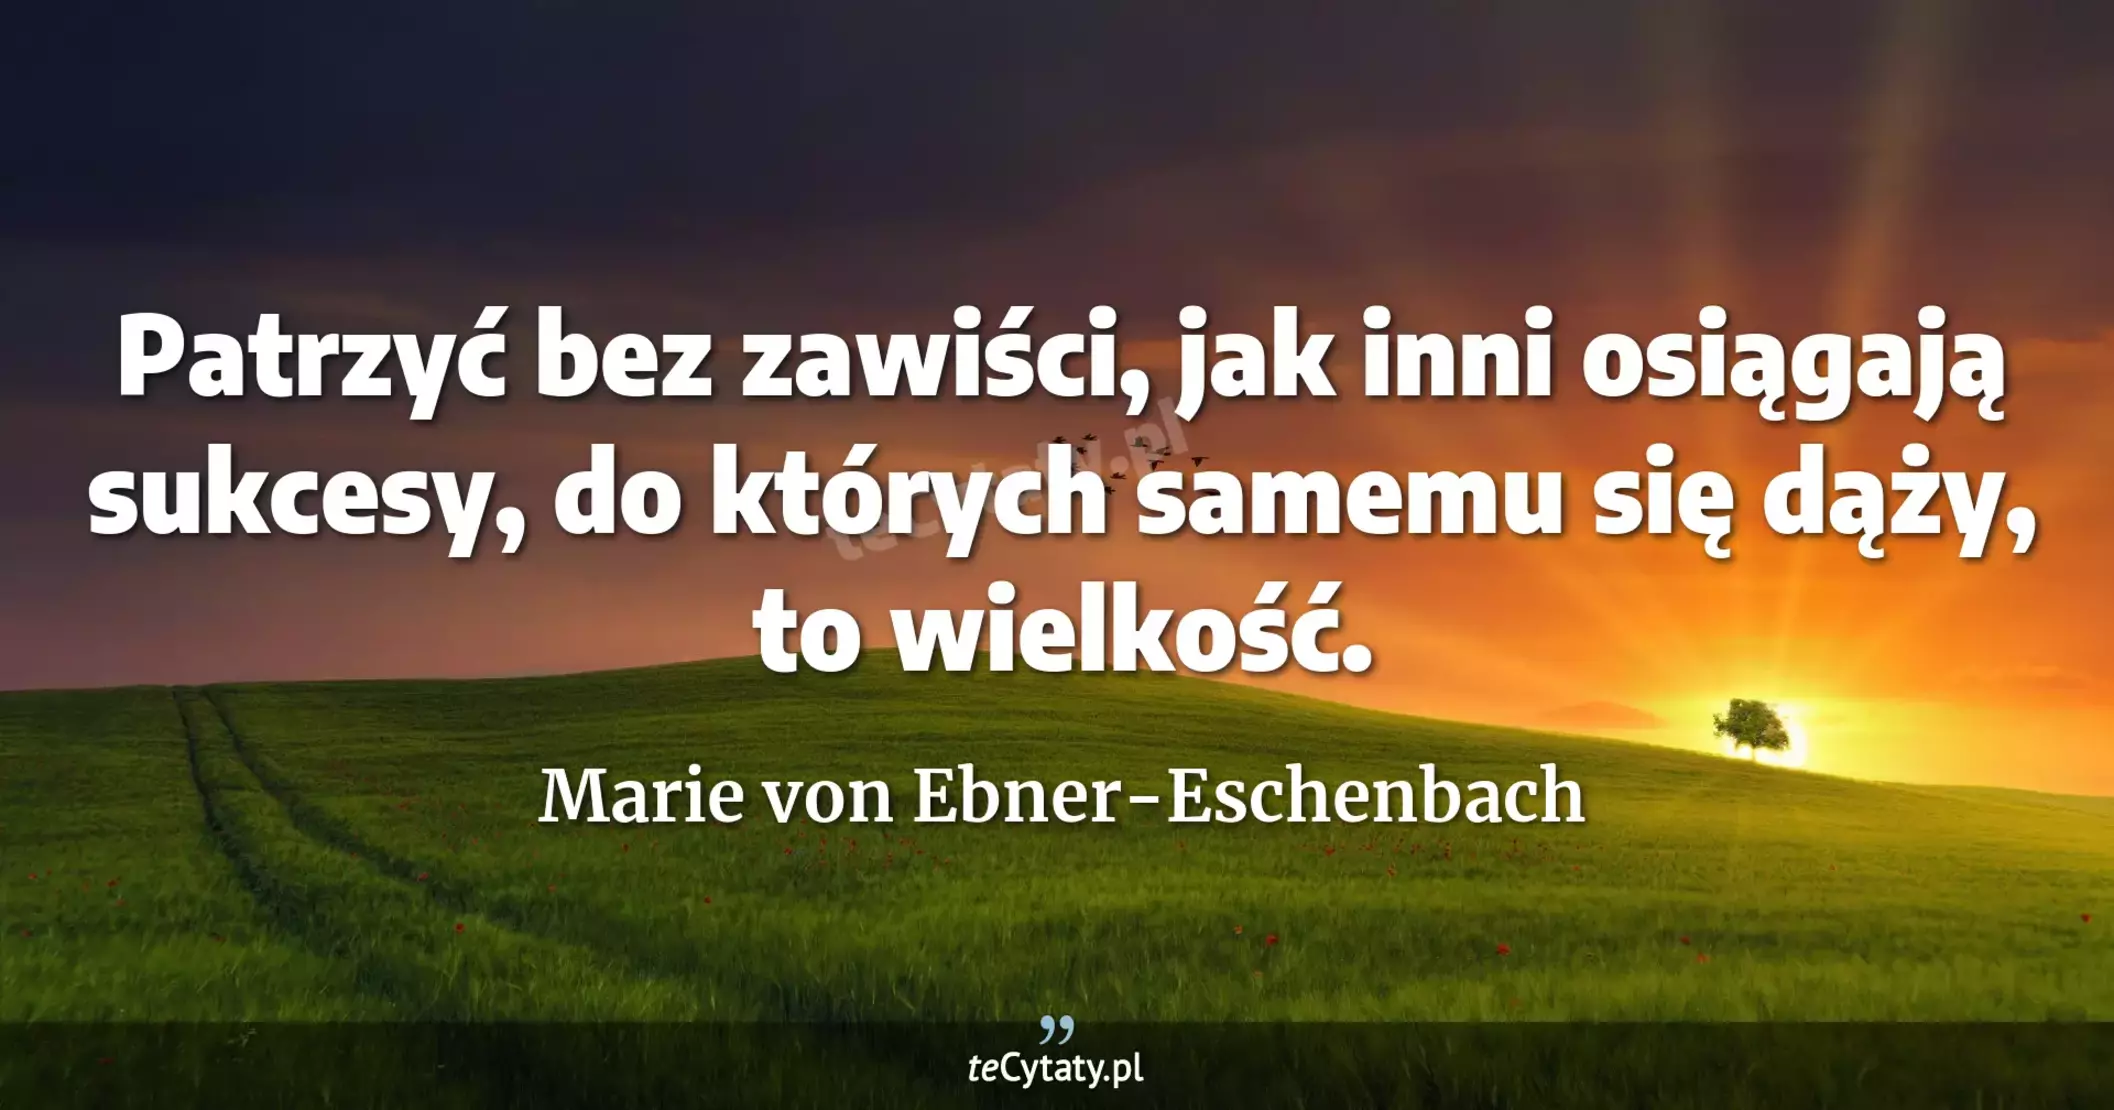 Patrzyć bez zawiści, jak inni osiągają sukcesy, do których samemu się dąży, to wielkość. - Marie von Ebner-Eschenbach